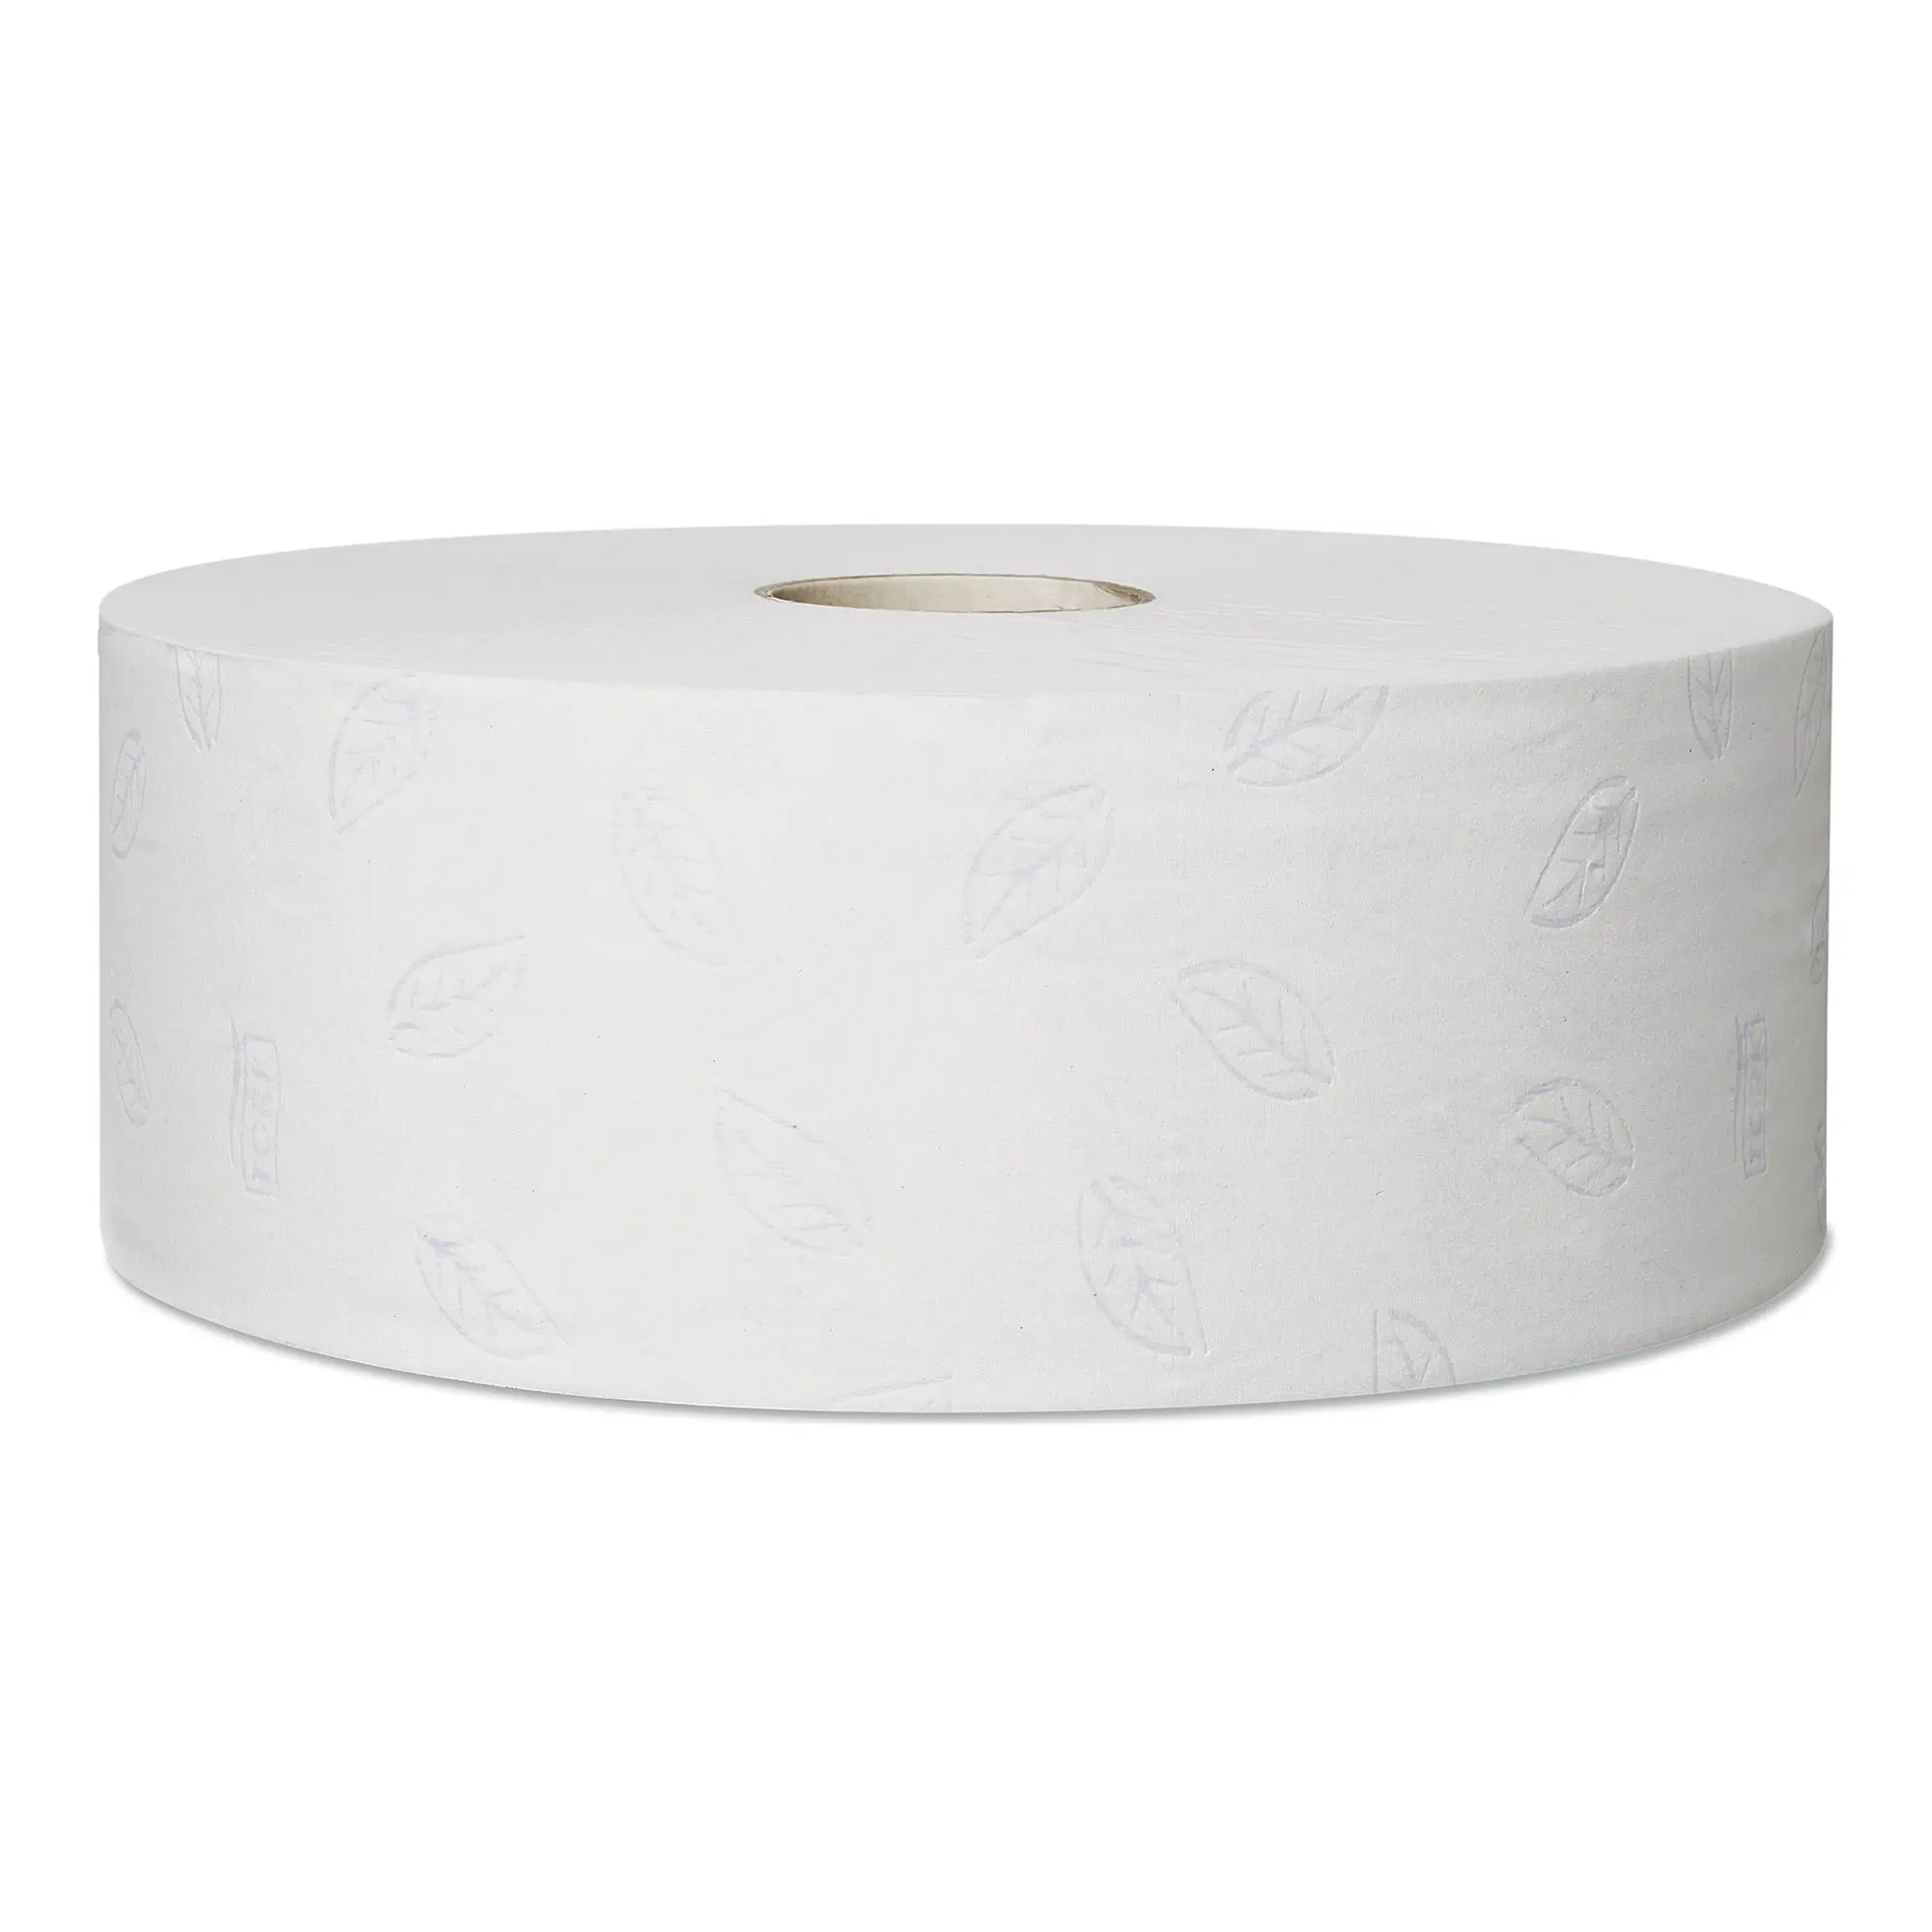 Tork Premium Toilettenpapier weich Midi Jumbo Großrolle T1 weiß 2-lagig, 360 Meter